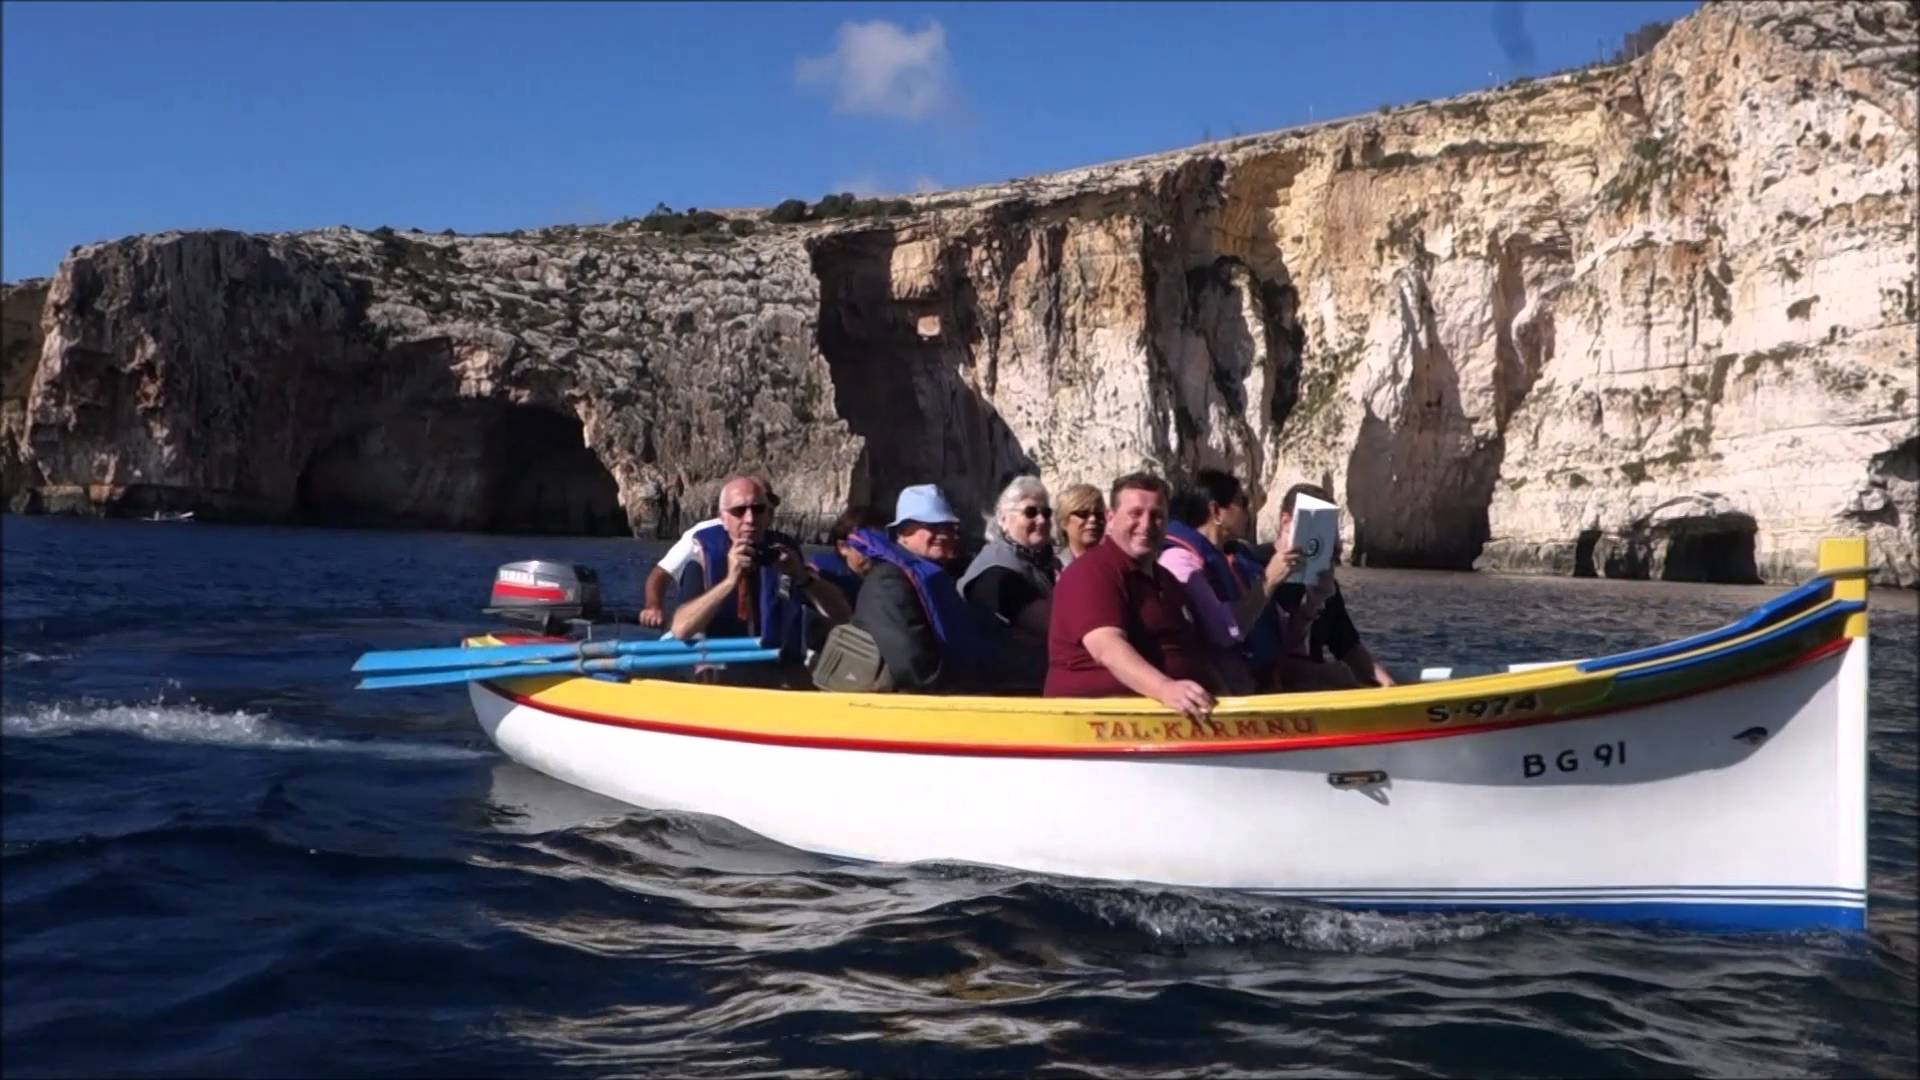 Blue Grotto Malta Boat Ride Part 2 MSC Preziosa - YouTube